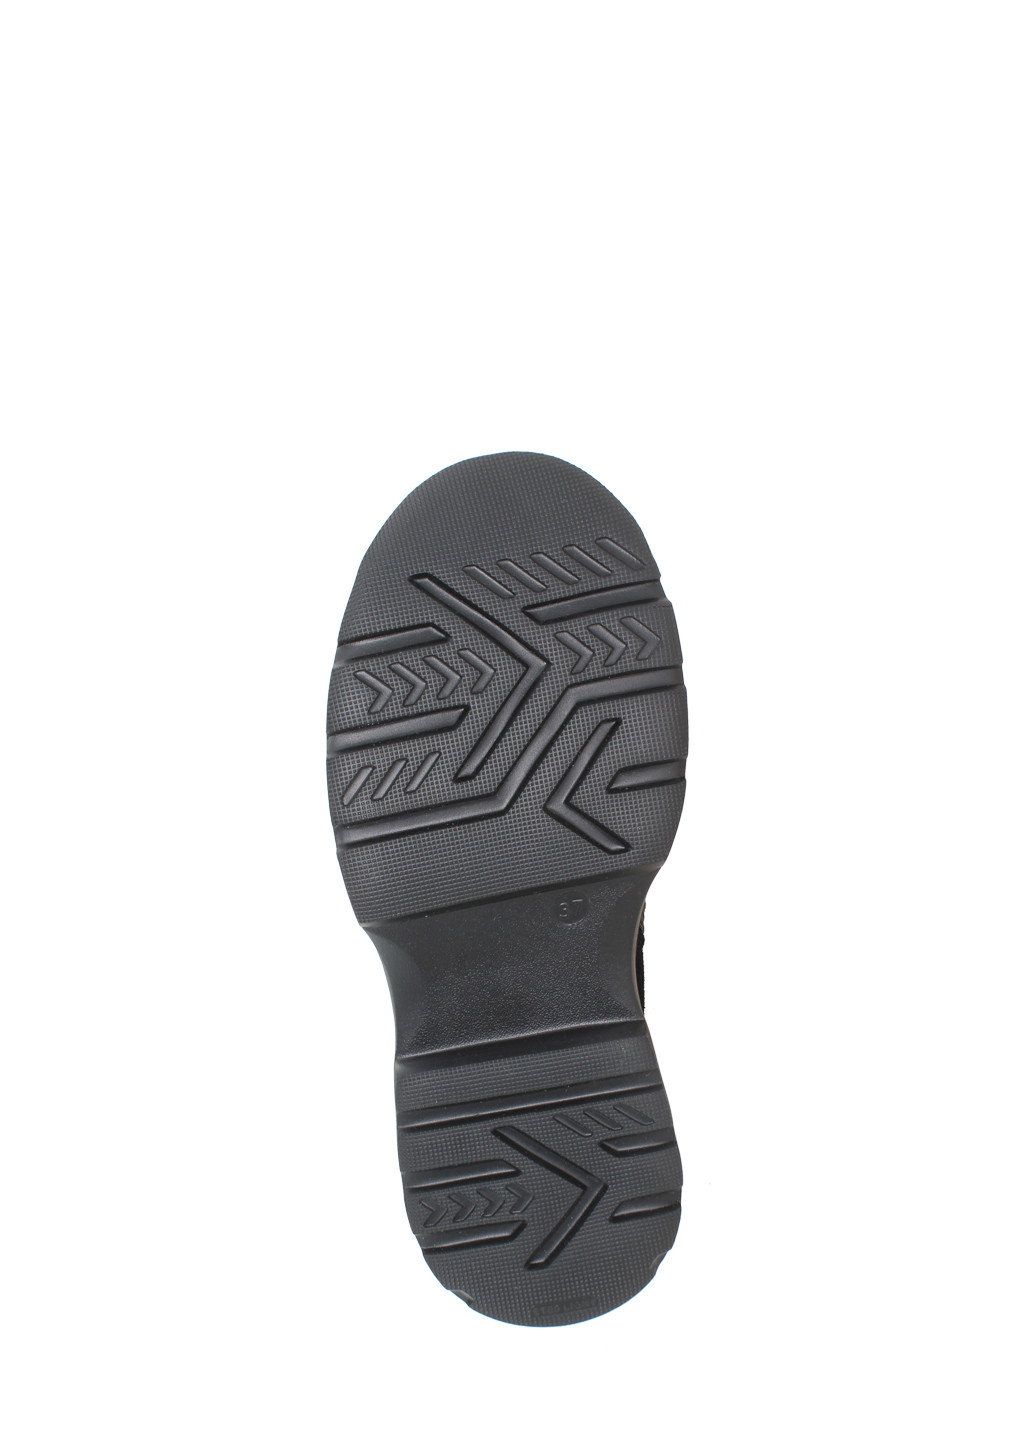 Осенние ботинки dr779-11 серый-черный Dalis из натуральной замши